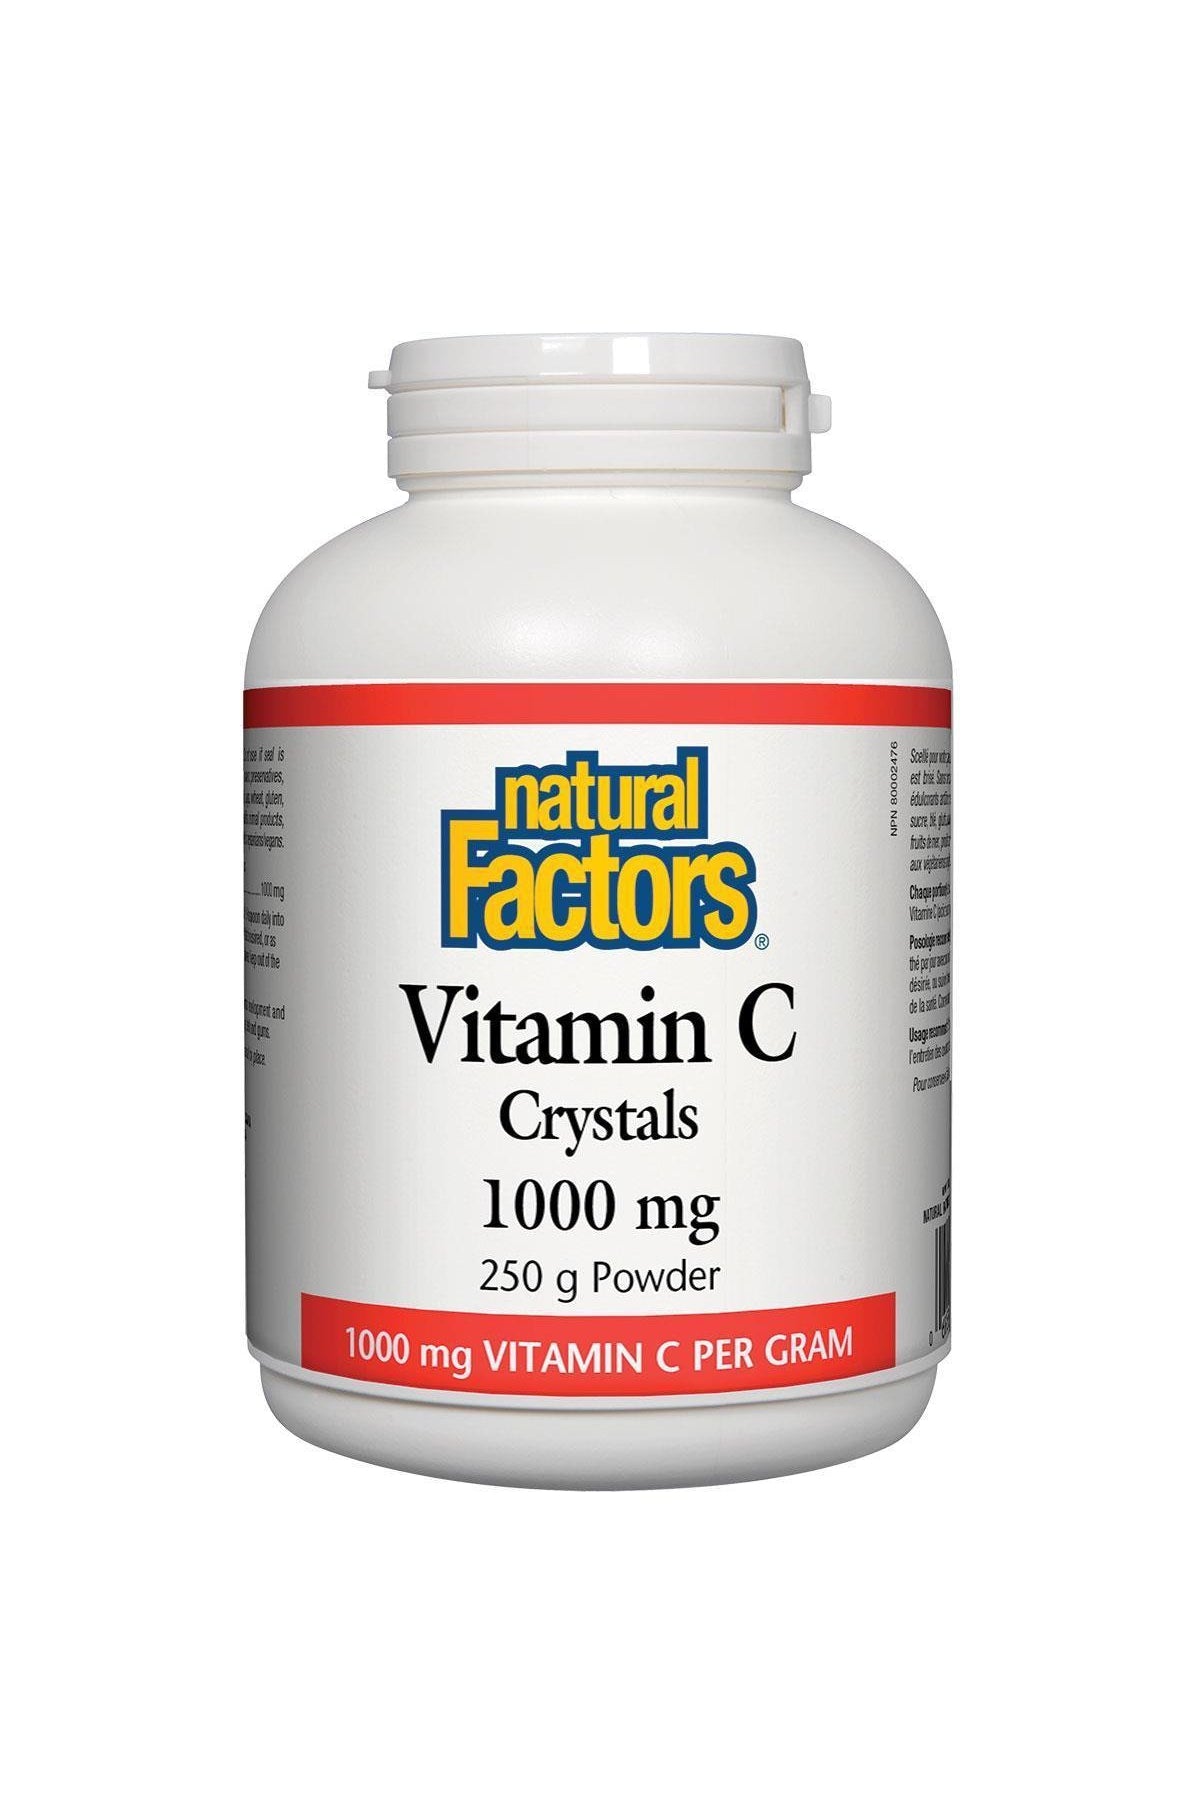 Natural Factors Vitamin C Crystals 250g